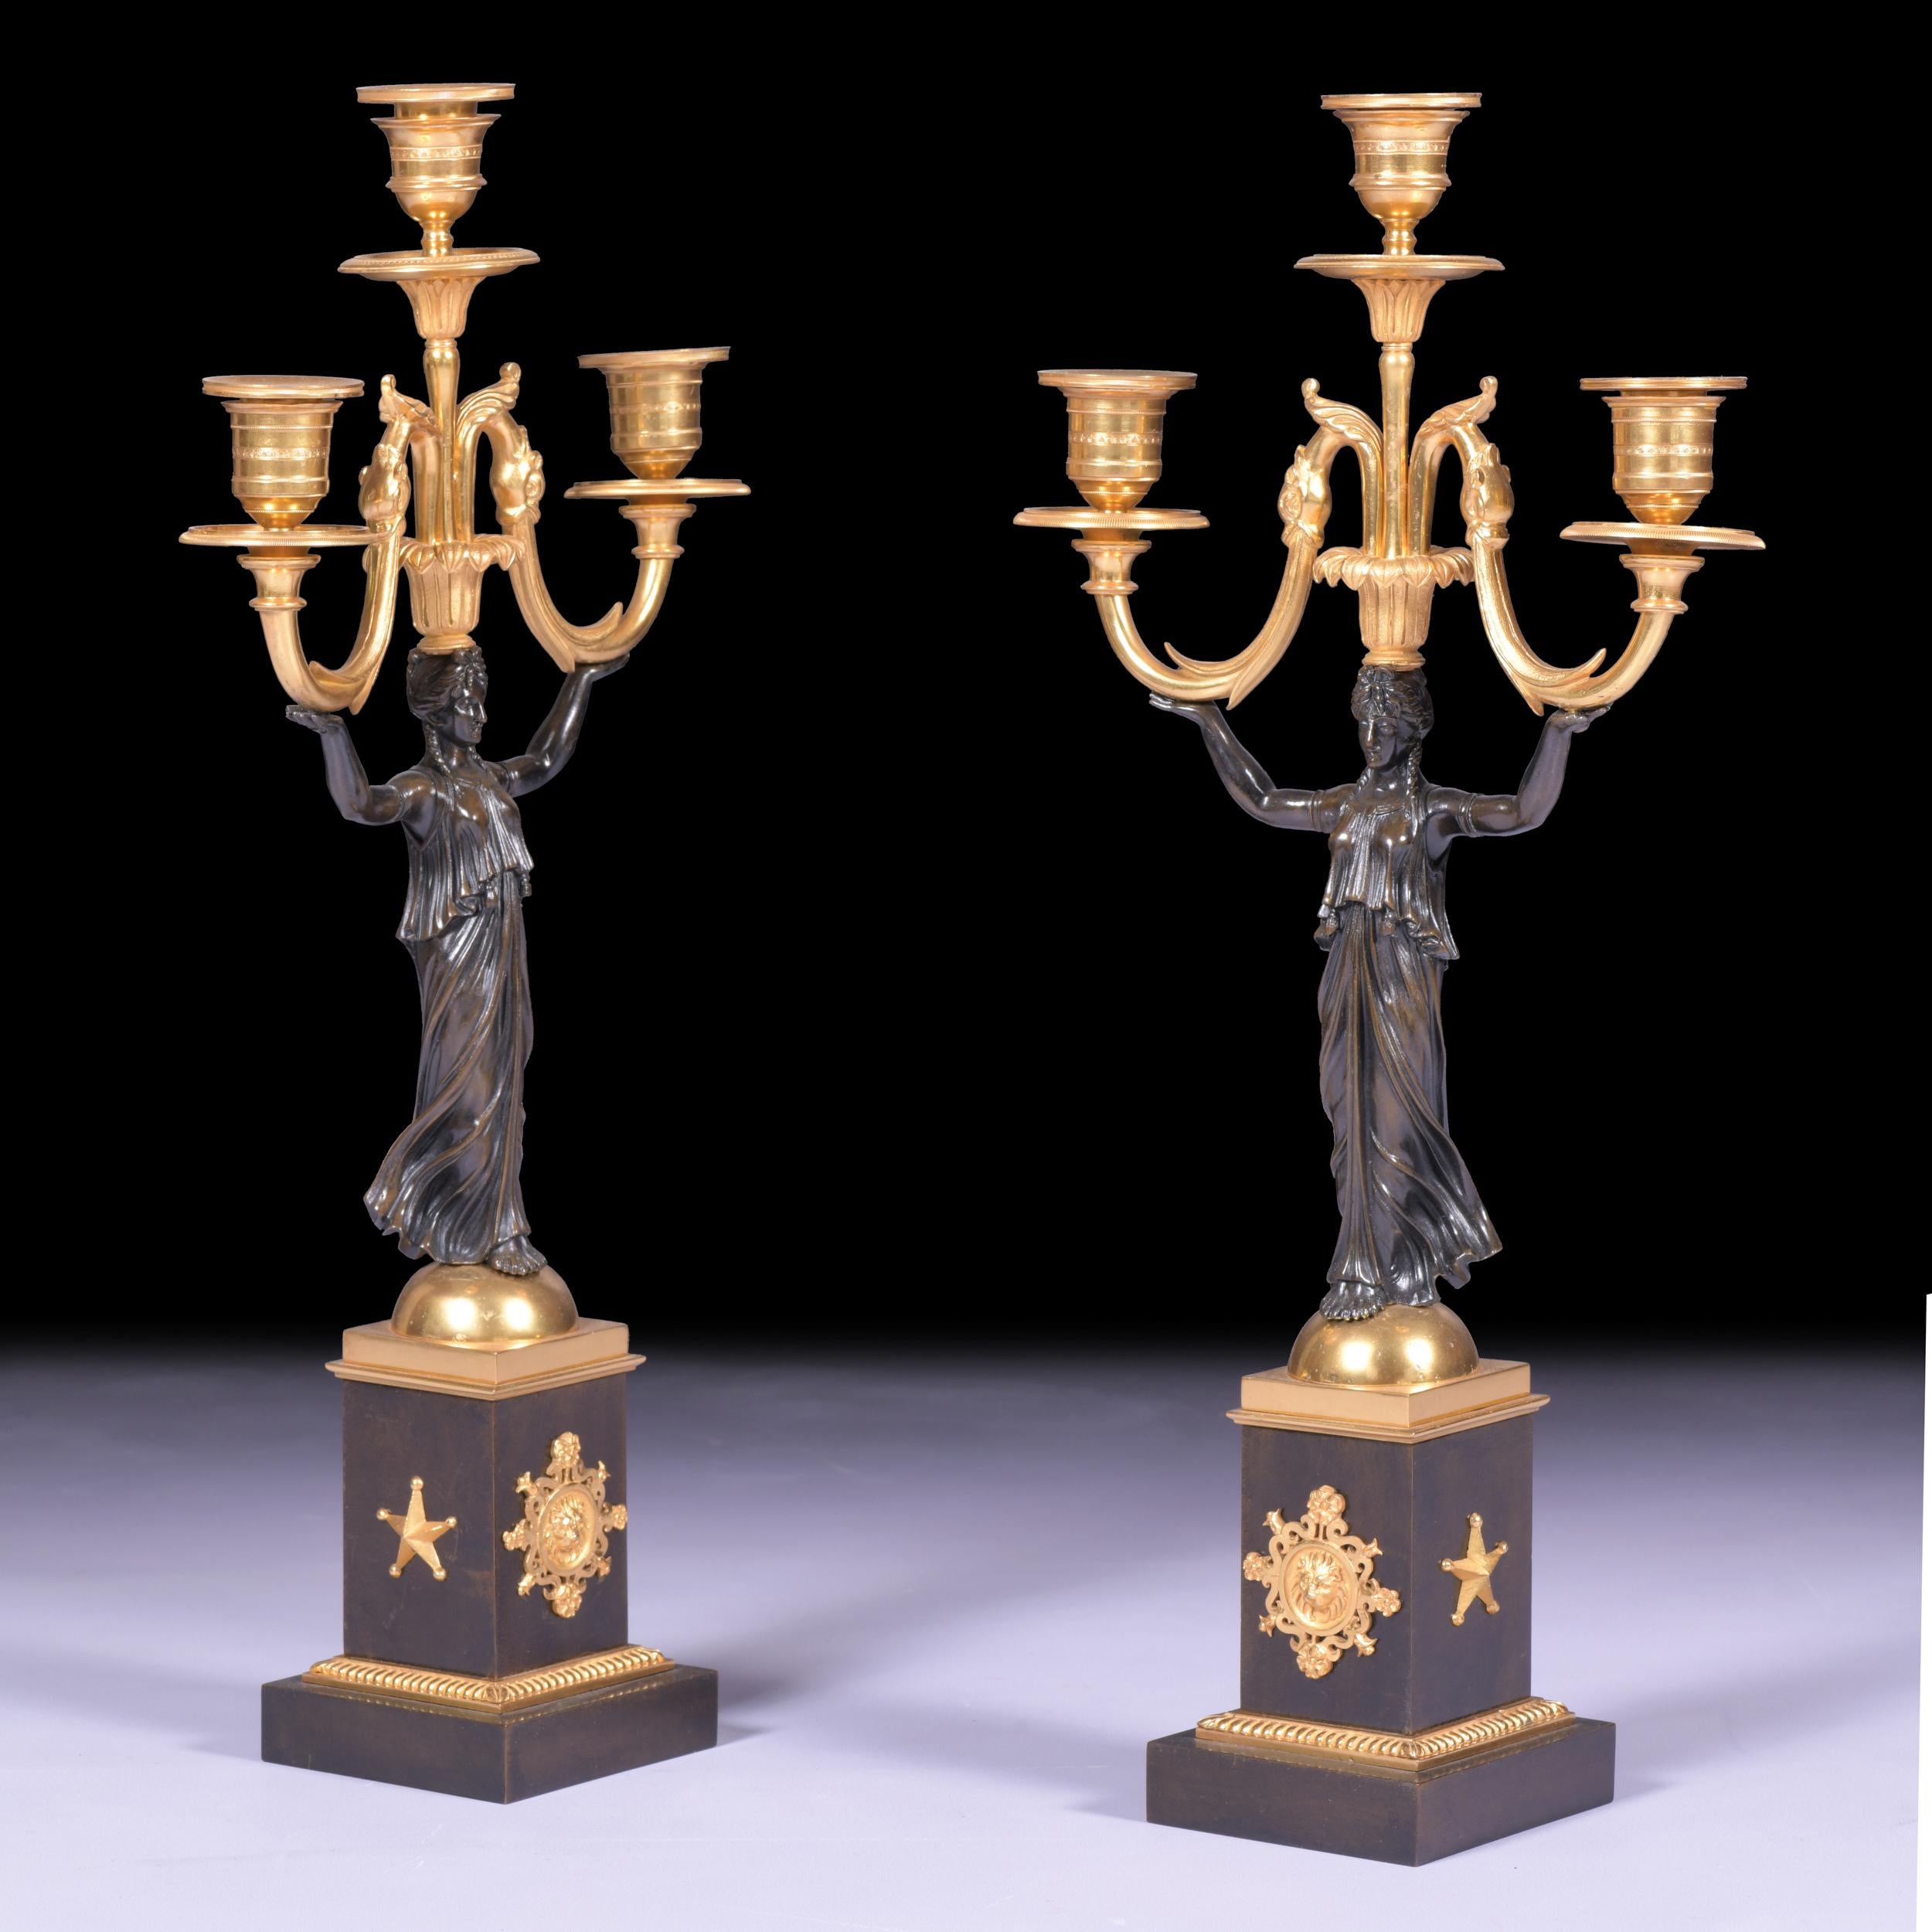 Superbe paire de candélabres à 3 lumières en bronze patiné et bronze doré, de style néoclassique français du 19e siècle. Chaque candélabre est surmonté d'une base carrée avec des supports en bronze doré et des motifs de feuillage sous une bande